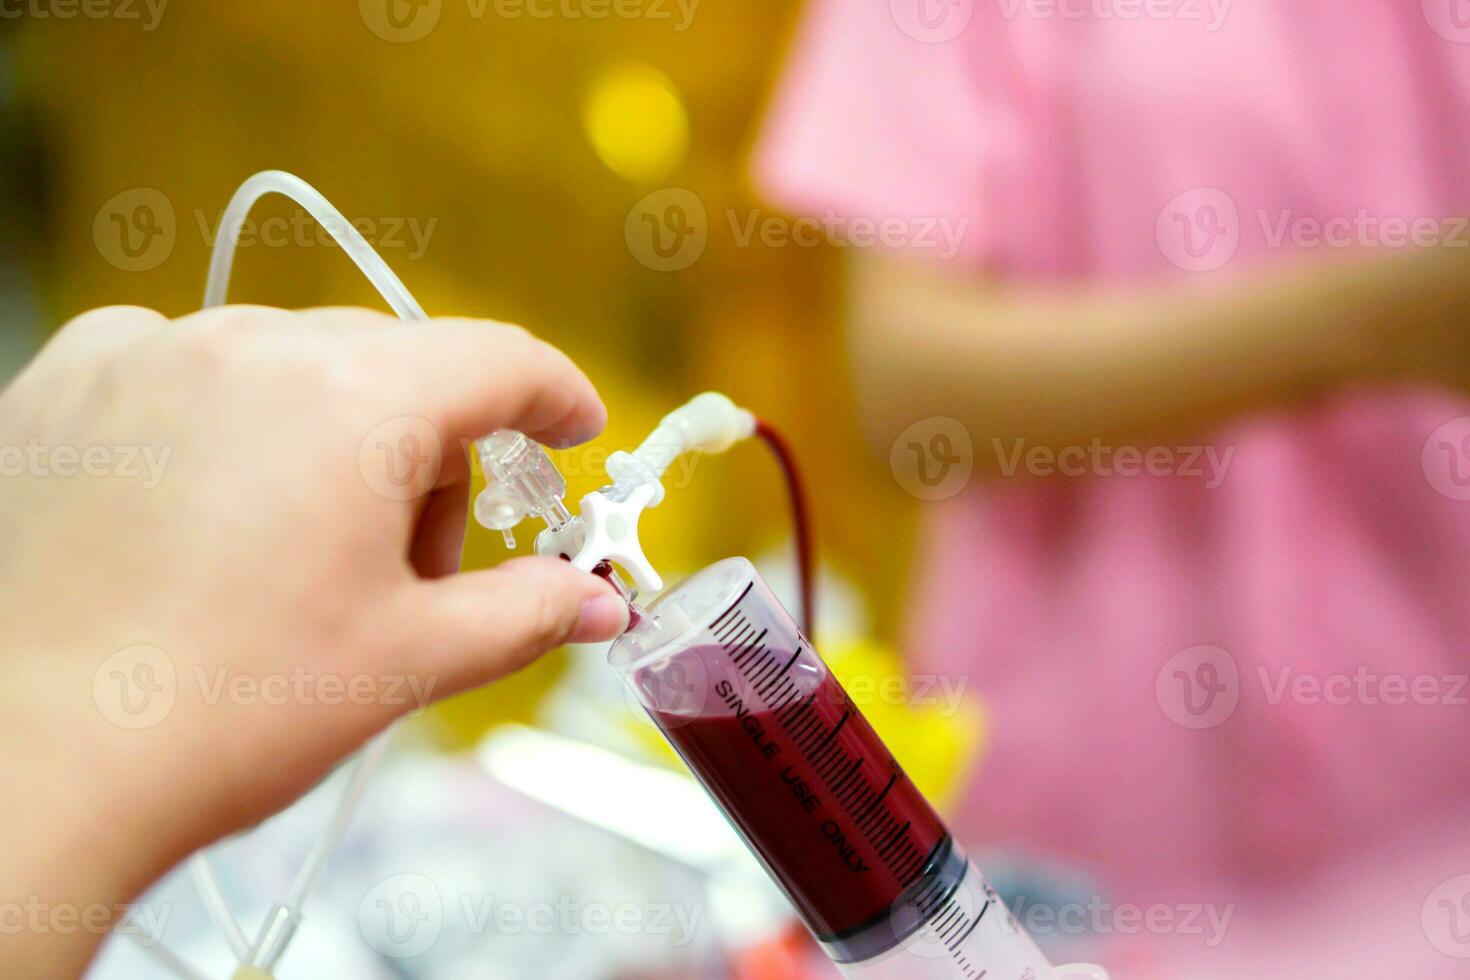 verpleegster handen is aanpassen de injectiespuit naar trek bloed van de bloed zak voor bloed transfusie naar ziek pasgeboren baby in een ziekenhuis. foto